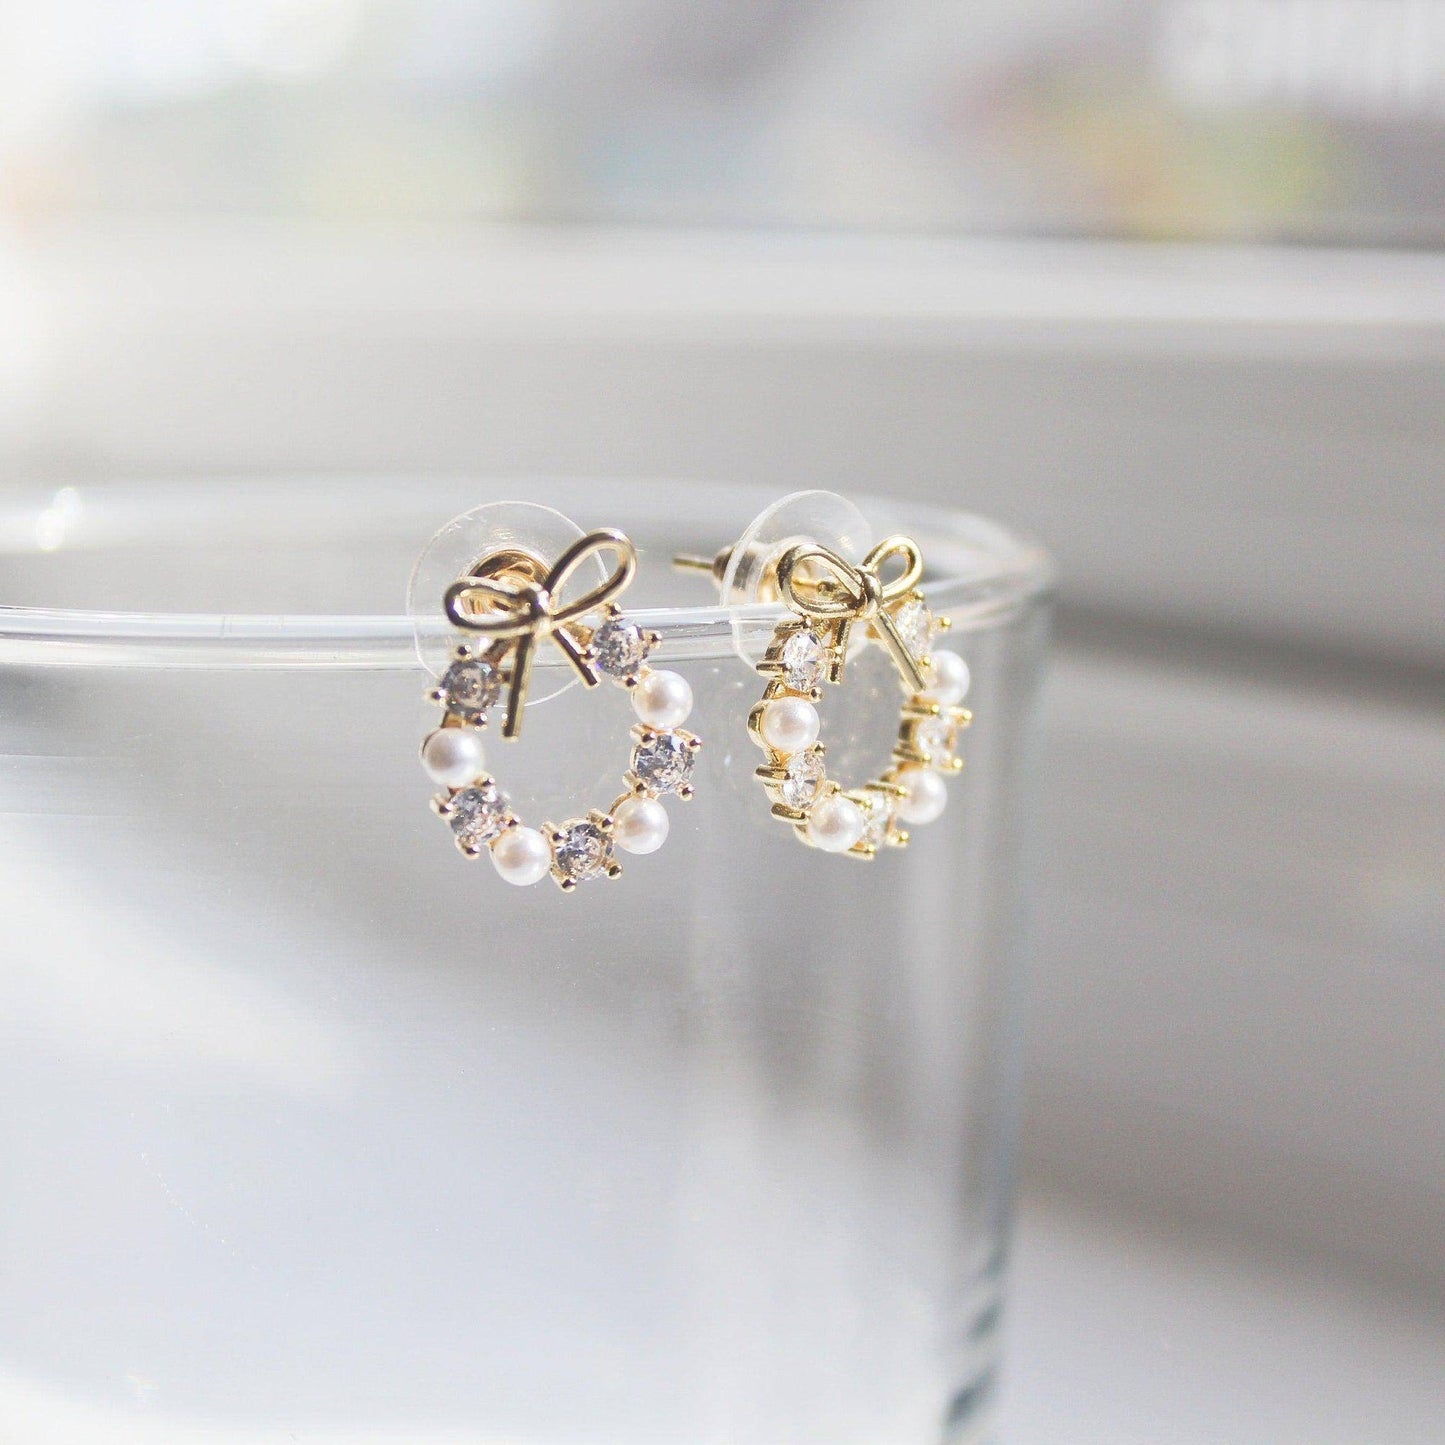 Gold Bow Tie Earrings - Mini Pearl Wreath Shape Sterling Silver Stud Earrings-Ninaouity